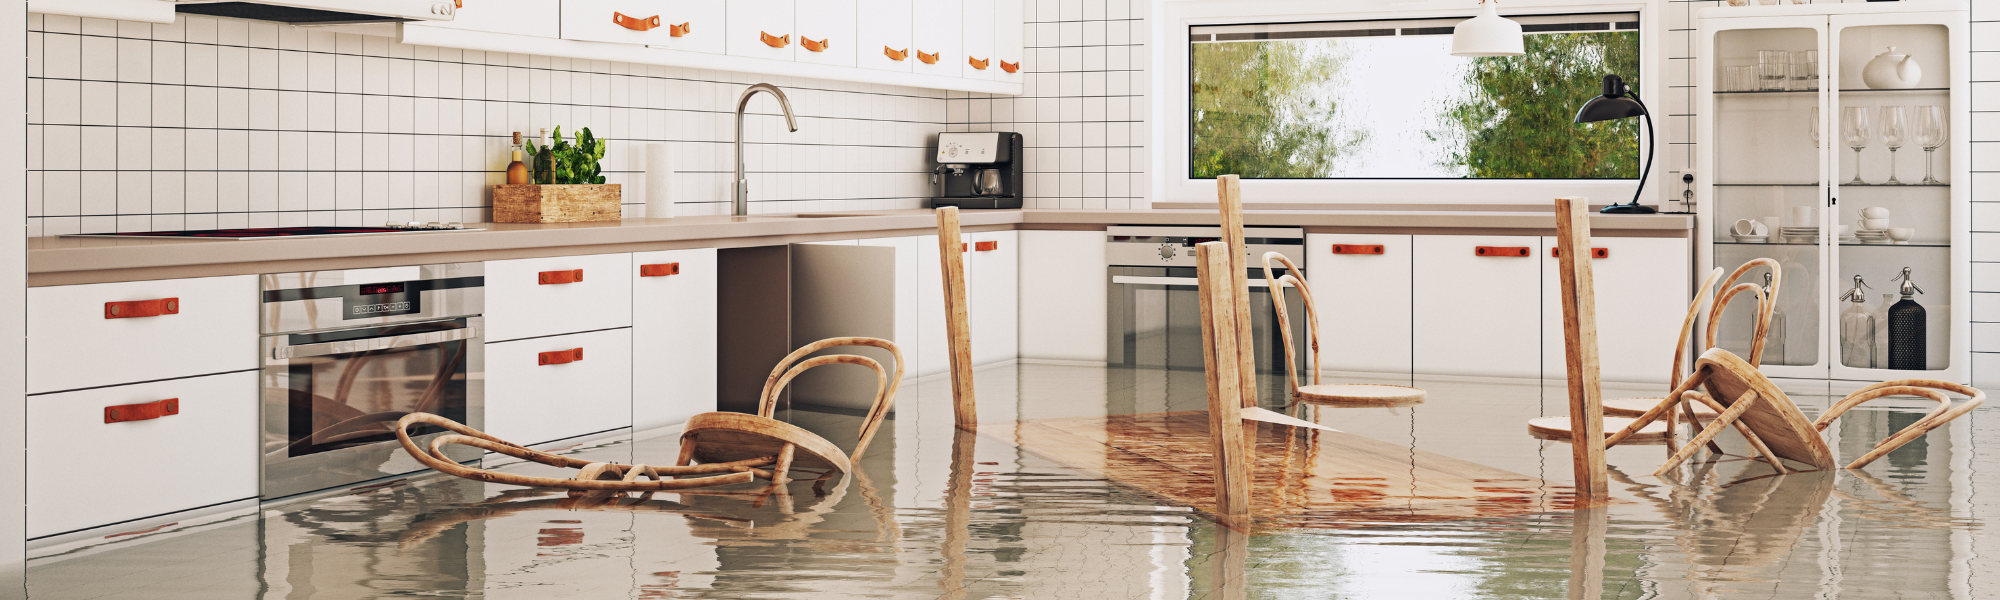 flooded kitchen